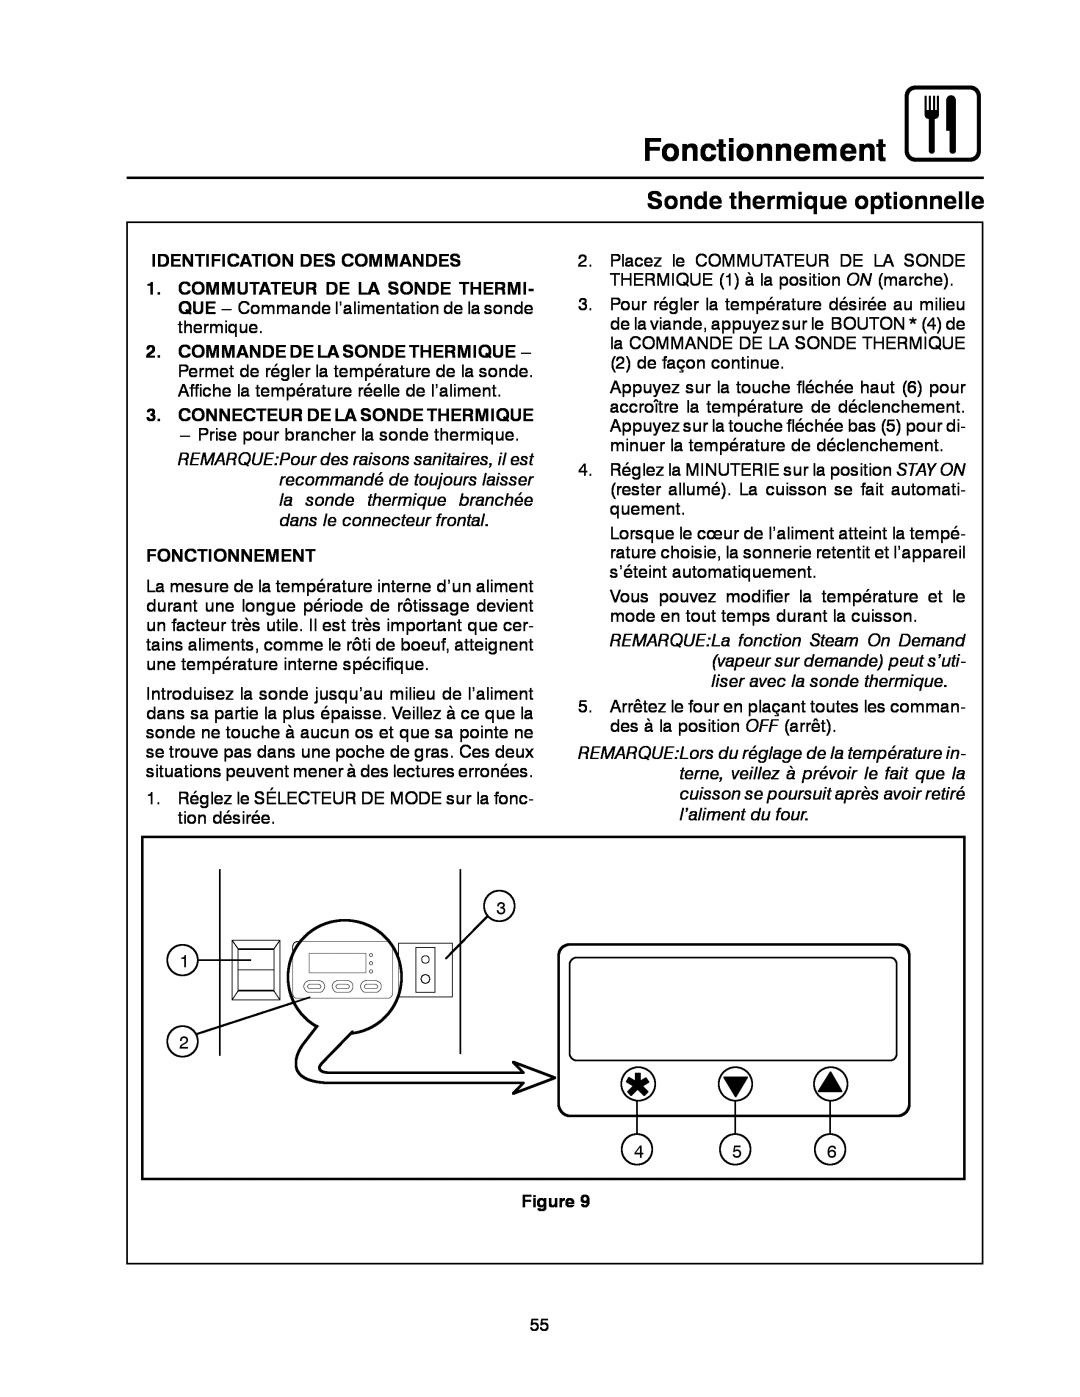 Blodgett BC-20G Sonde thermique optionnelle, Fonctionnement, Identification Des Commandes, Commande De La Sonde Thermique 